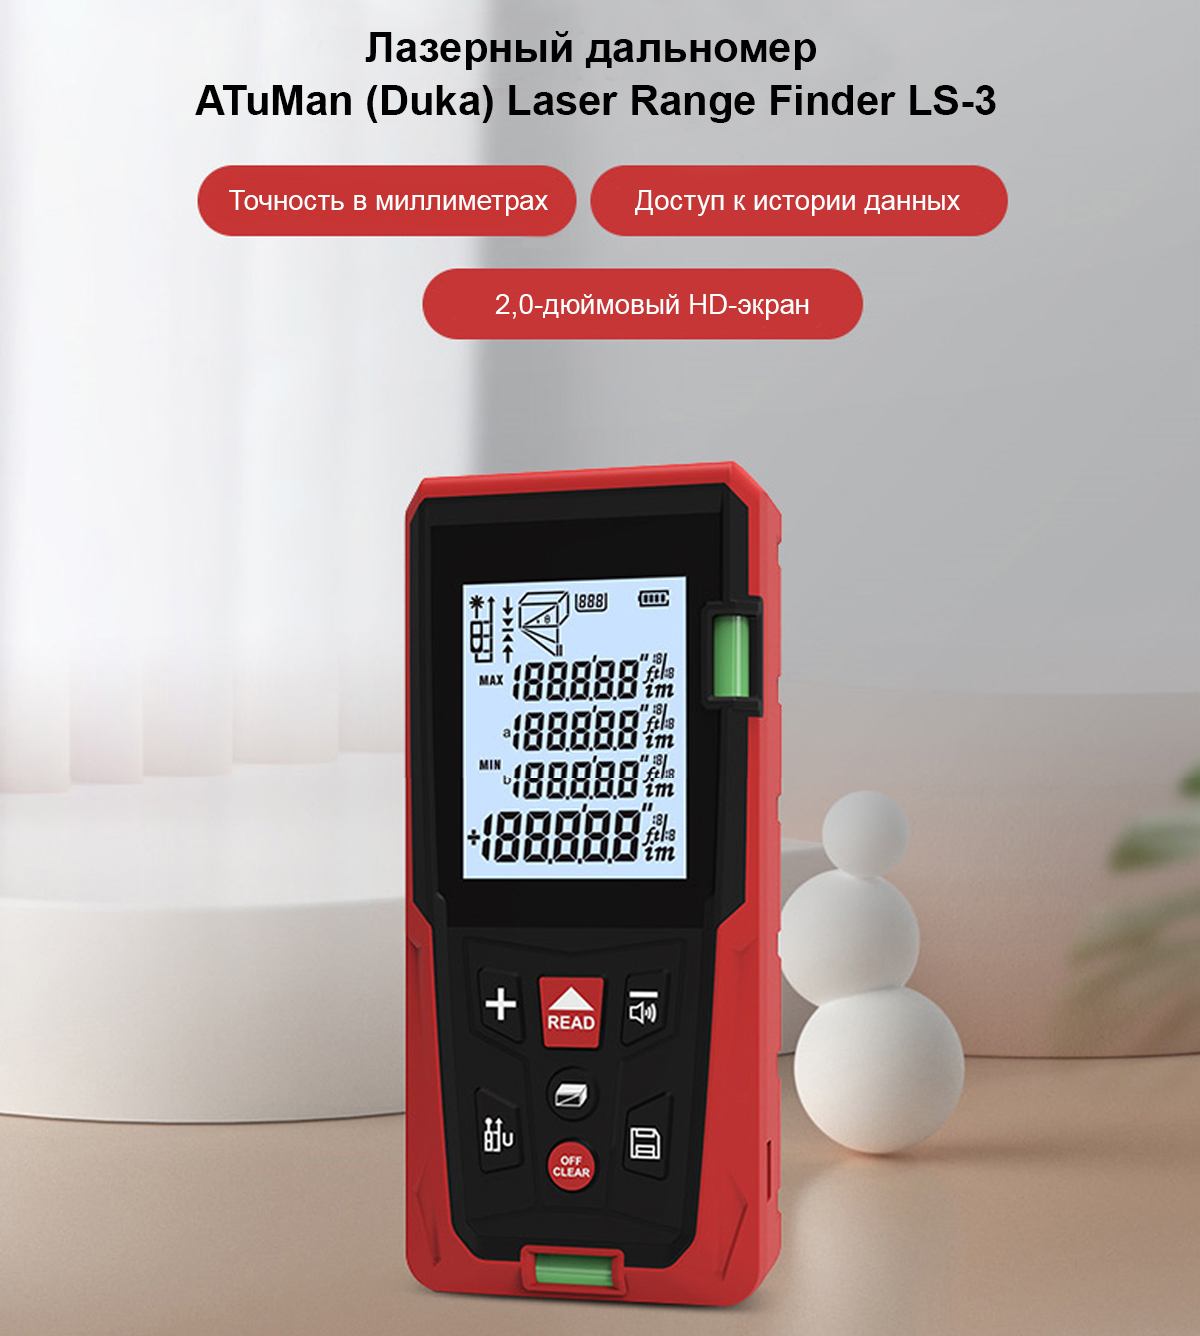 Лазерный дальномер ATuMan (Duka) Laser Range Finder LS-3